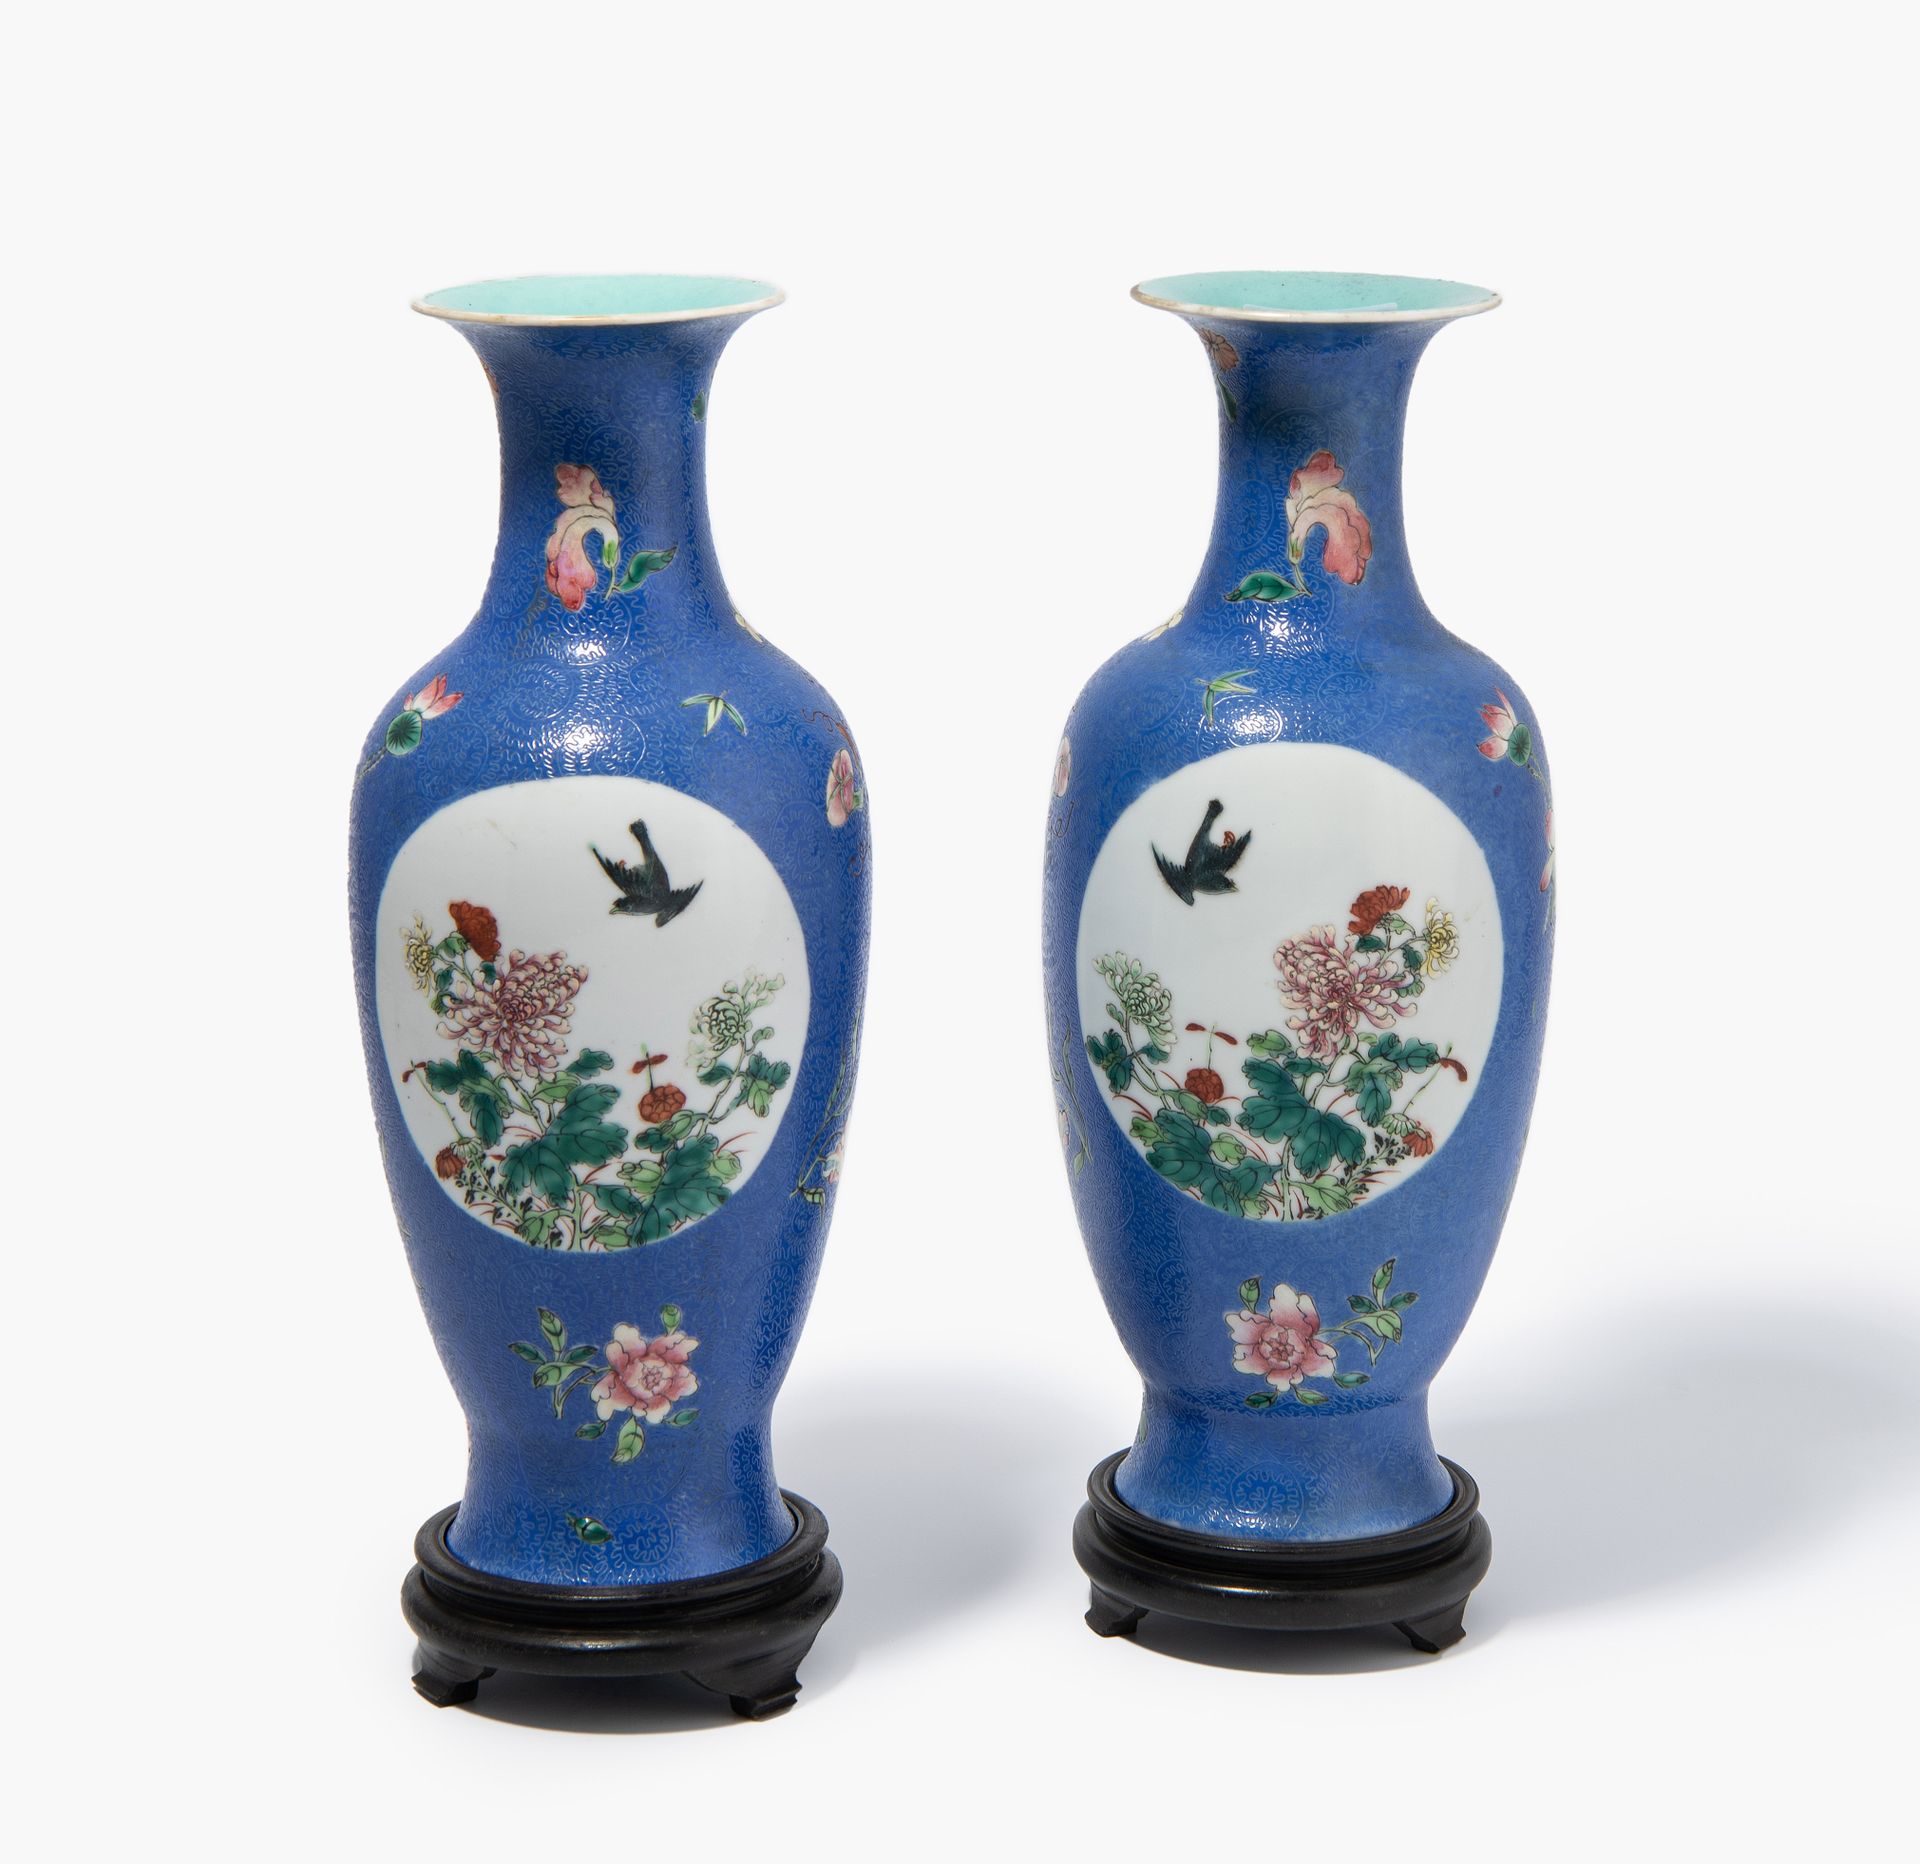 1 Paar Vasen 1 par de jarrones
China, s. XIX/XX. Porcelana. Marca de sello Qianl&hellip;